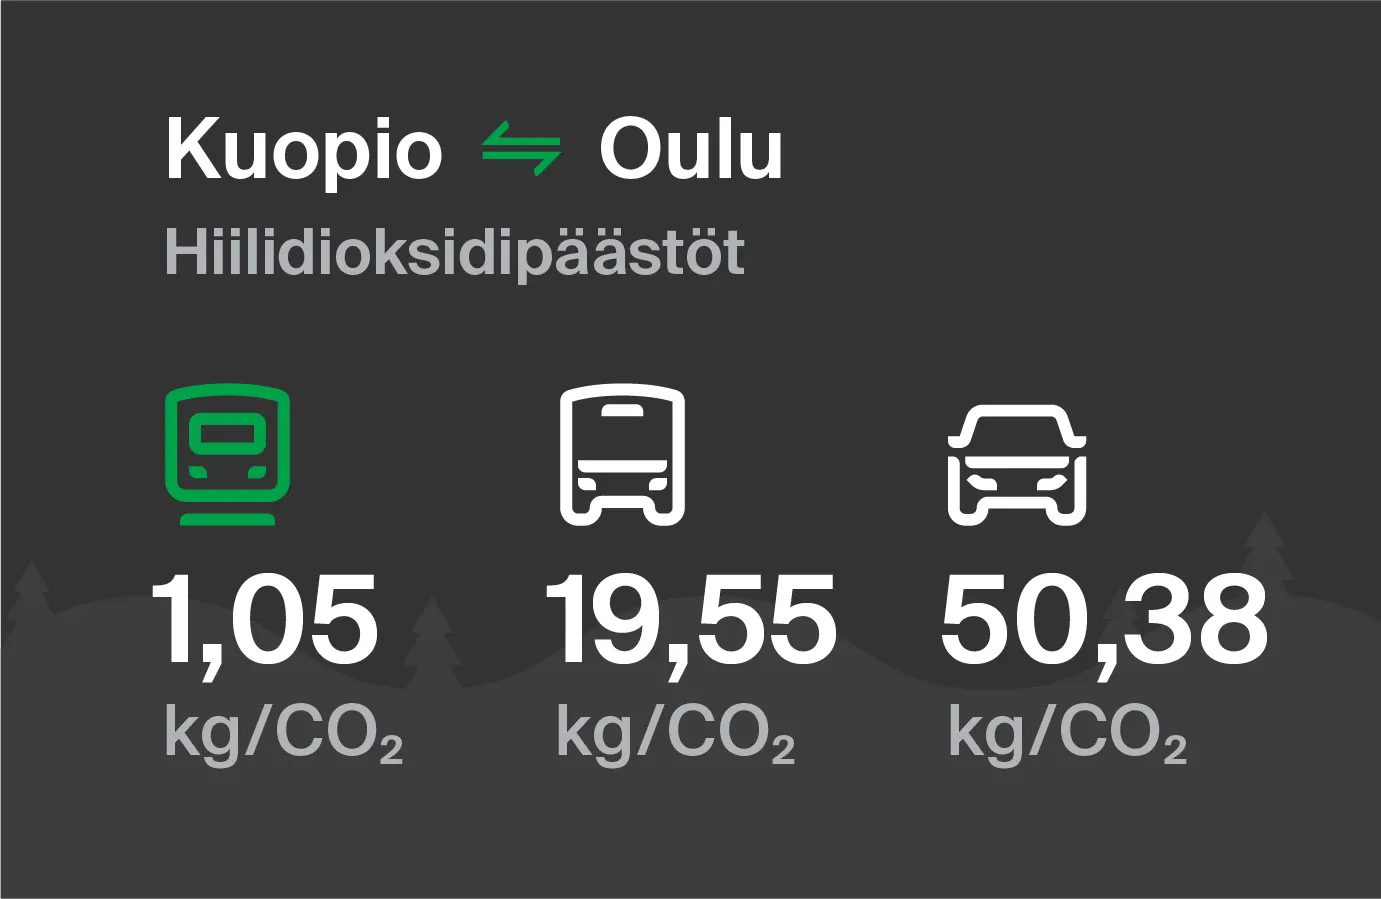 Hiilidioksidipäästöt Kuopiosta Ouluun eri kulkuvälinemuodoilla: junalla 1,05 kg/CO2, bussilla 19,55 kg/CO2 ja autolla 50,38 kg/CO2.